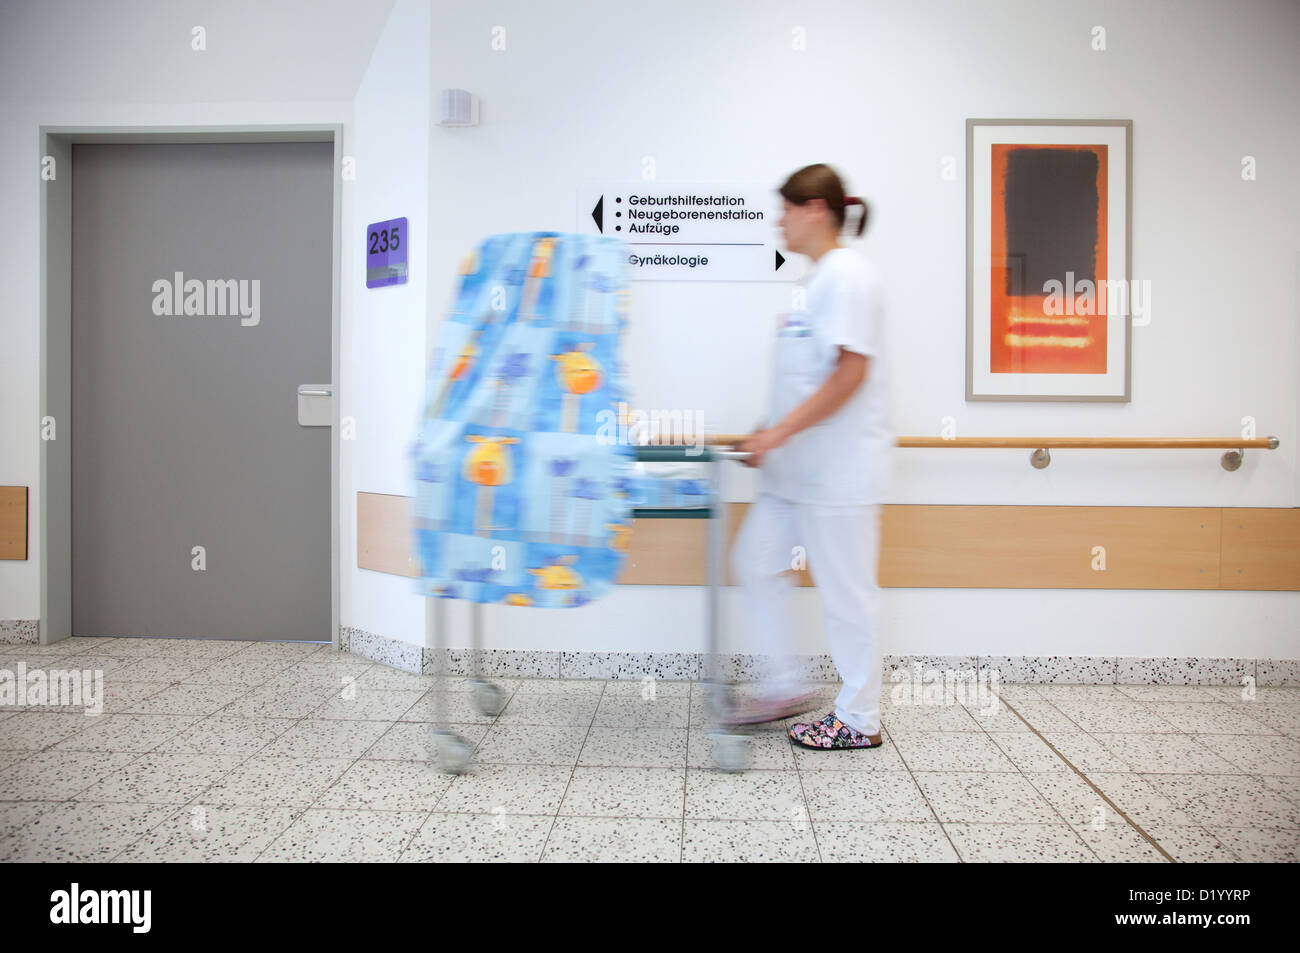 Essen, Allemagne, puéricultrice pousse un bébé nouveau-né dans le couloir Banque D'Images